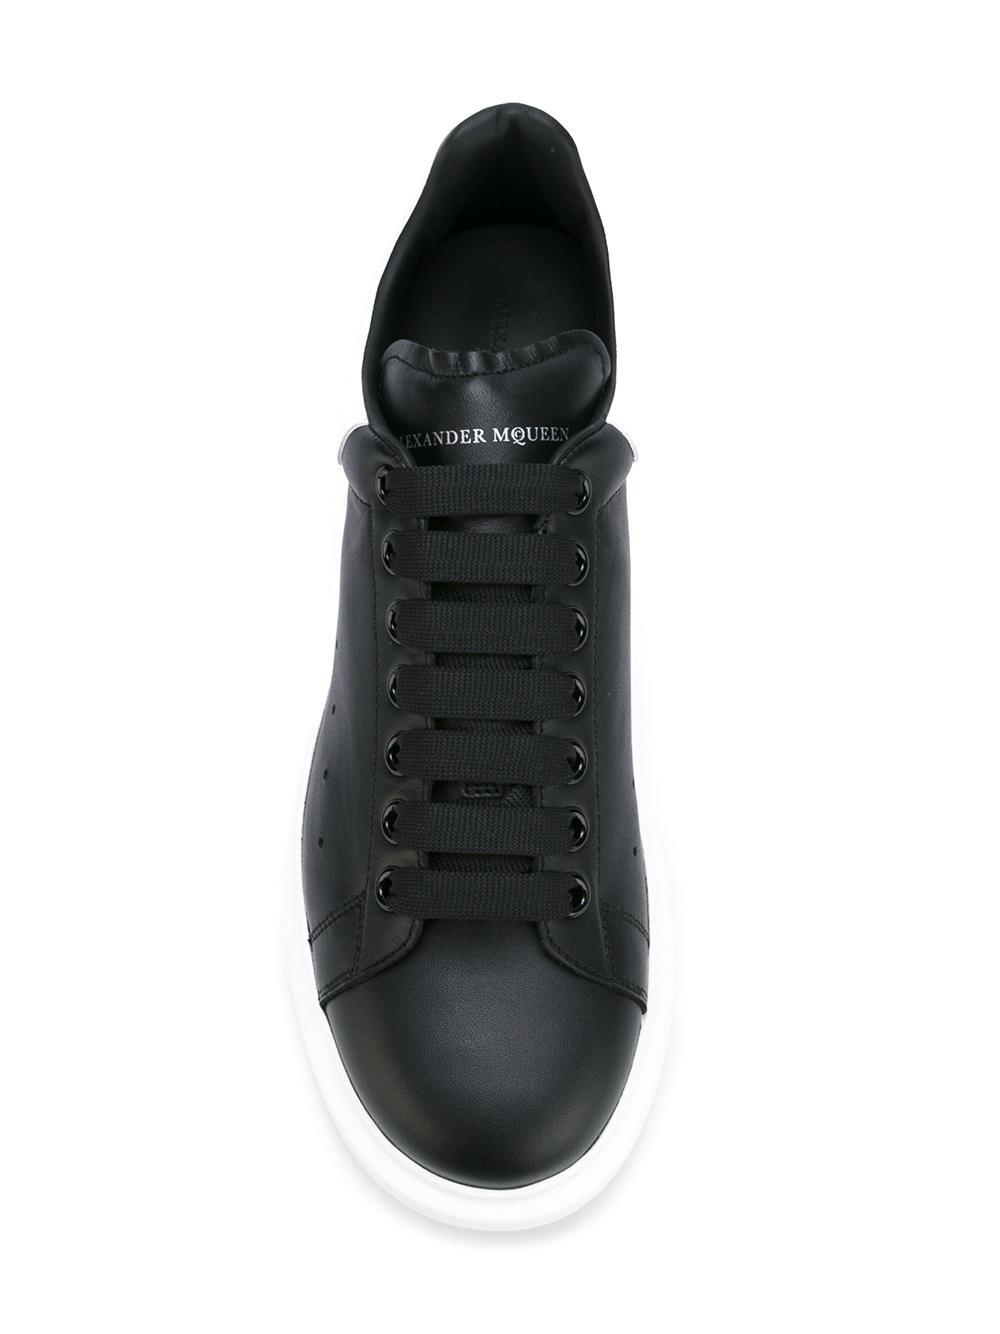 Alexander mcqueen Oversized Sneakers in Black for Men | Lyst